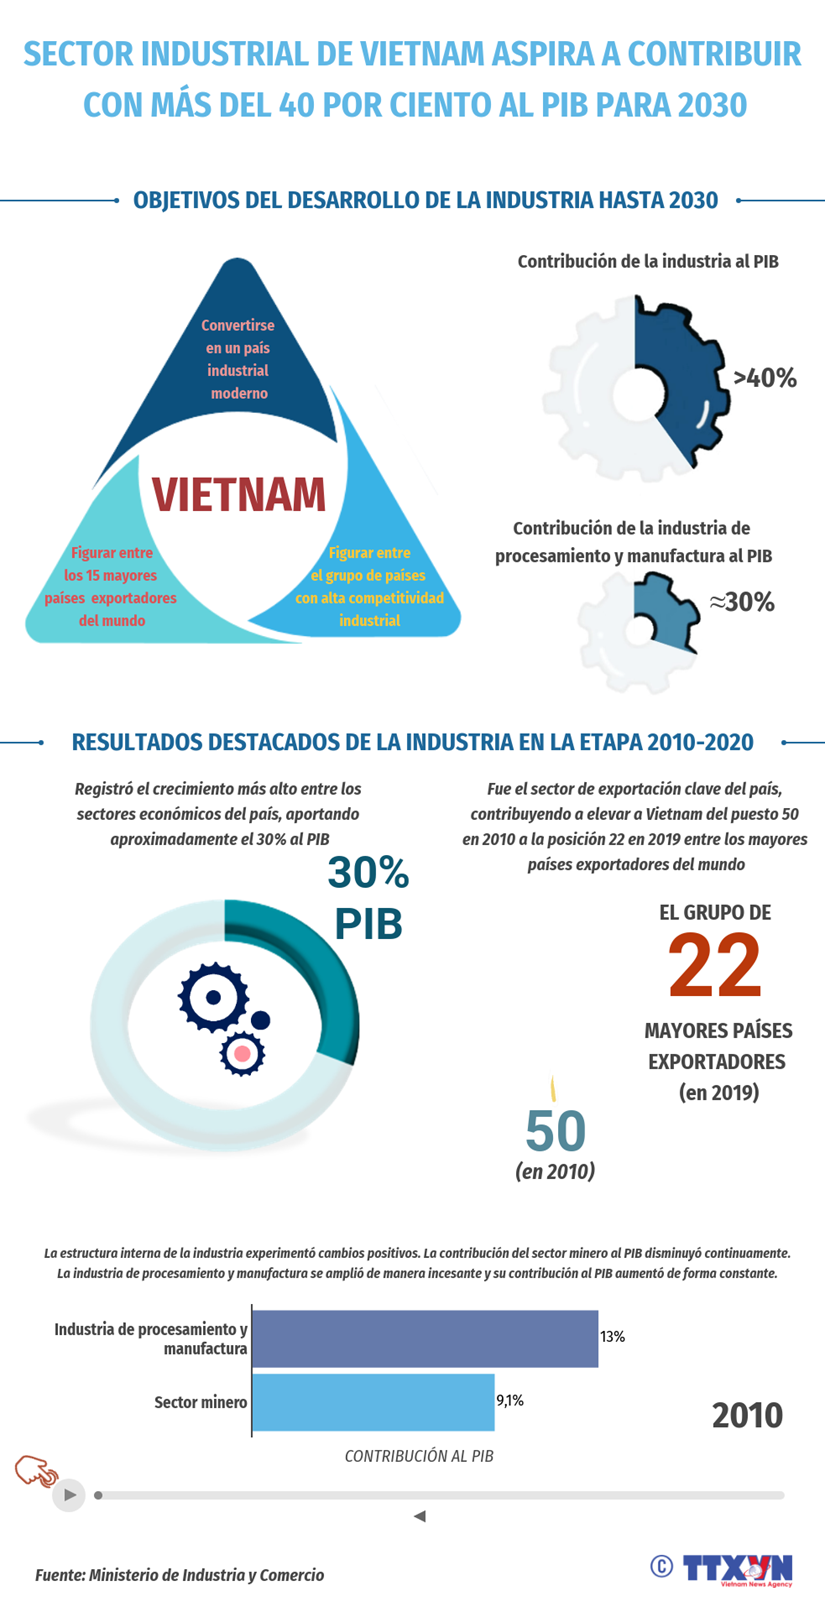 Sector industrial de Vietnam aspira a contribuir con mas del 40 por ciento al PIB para 2030 hinh anh 1